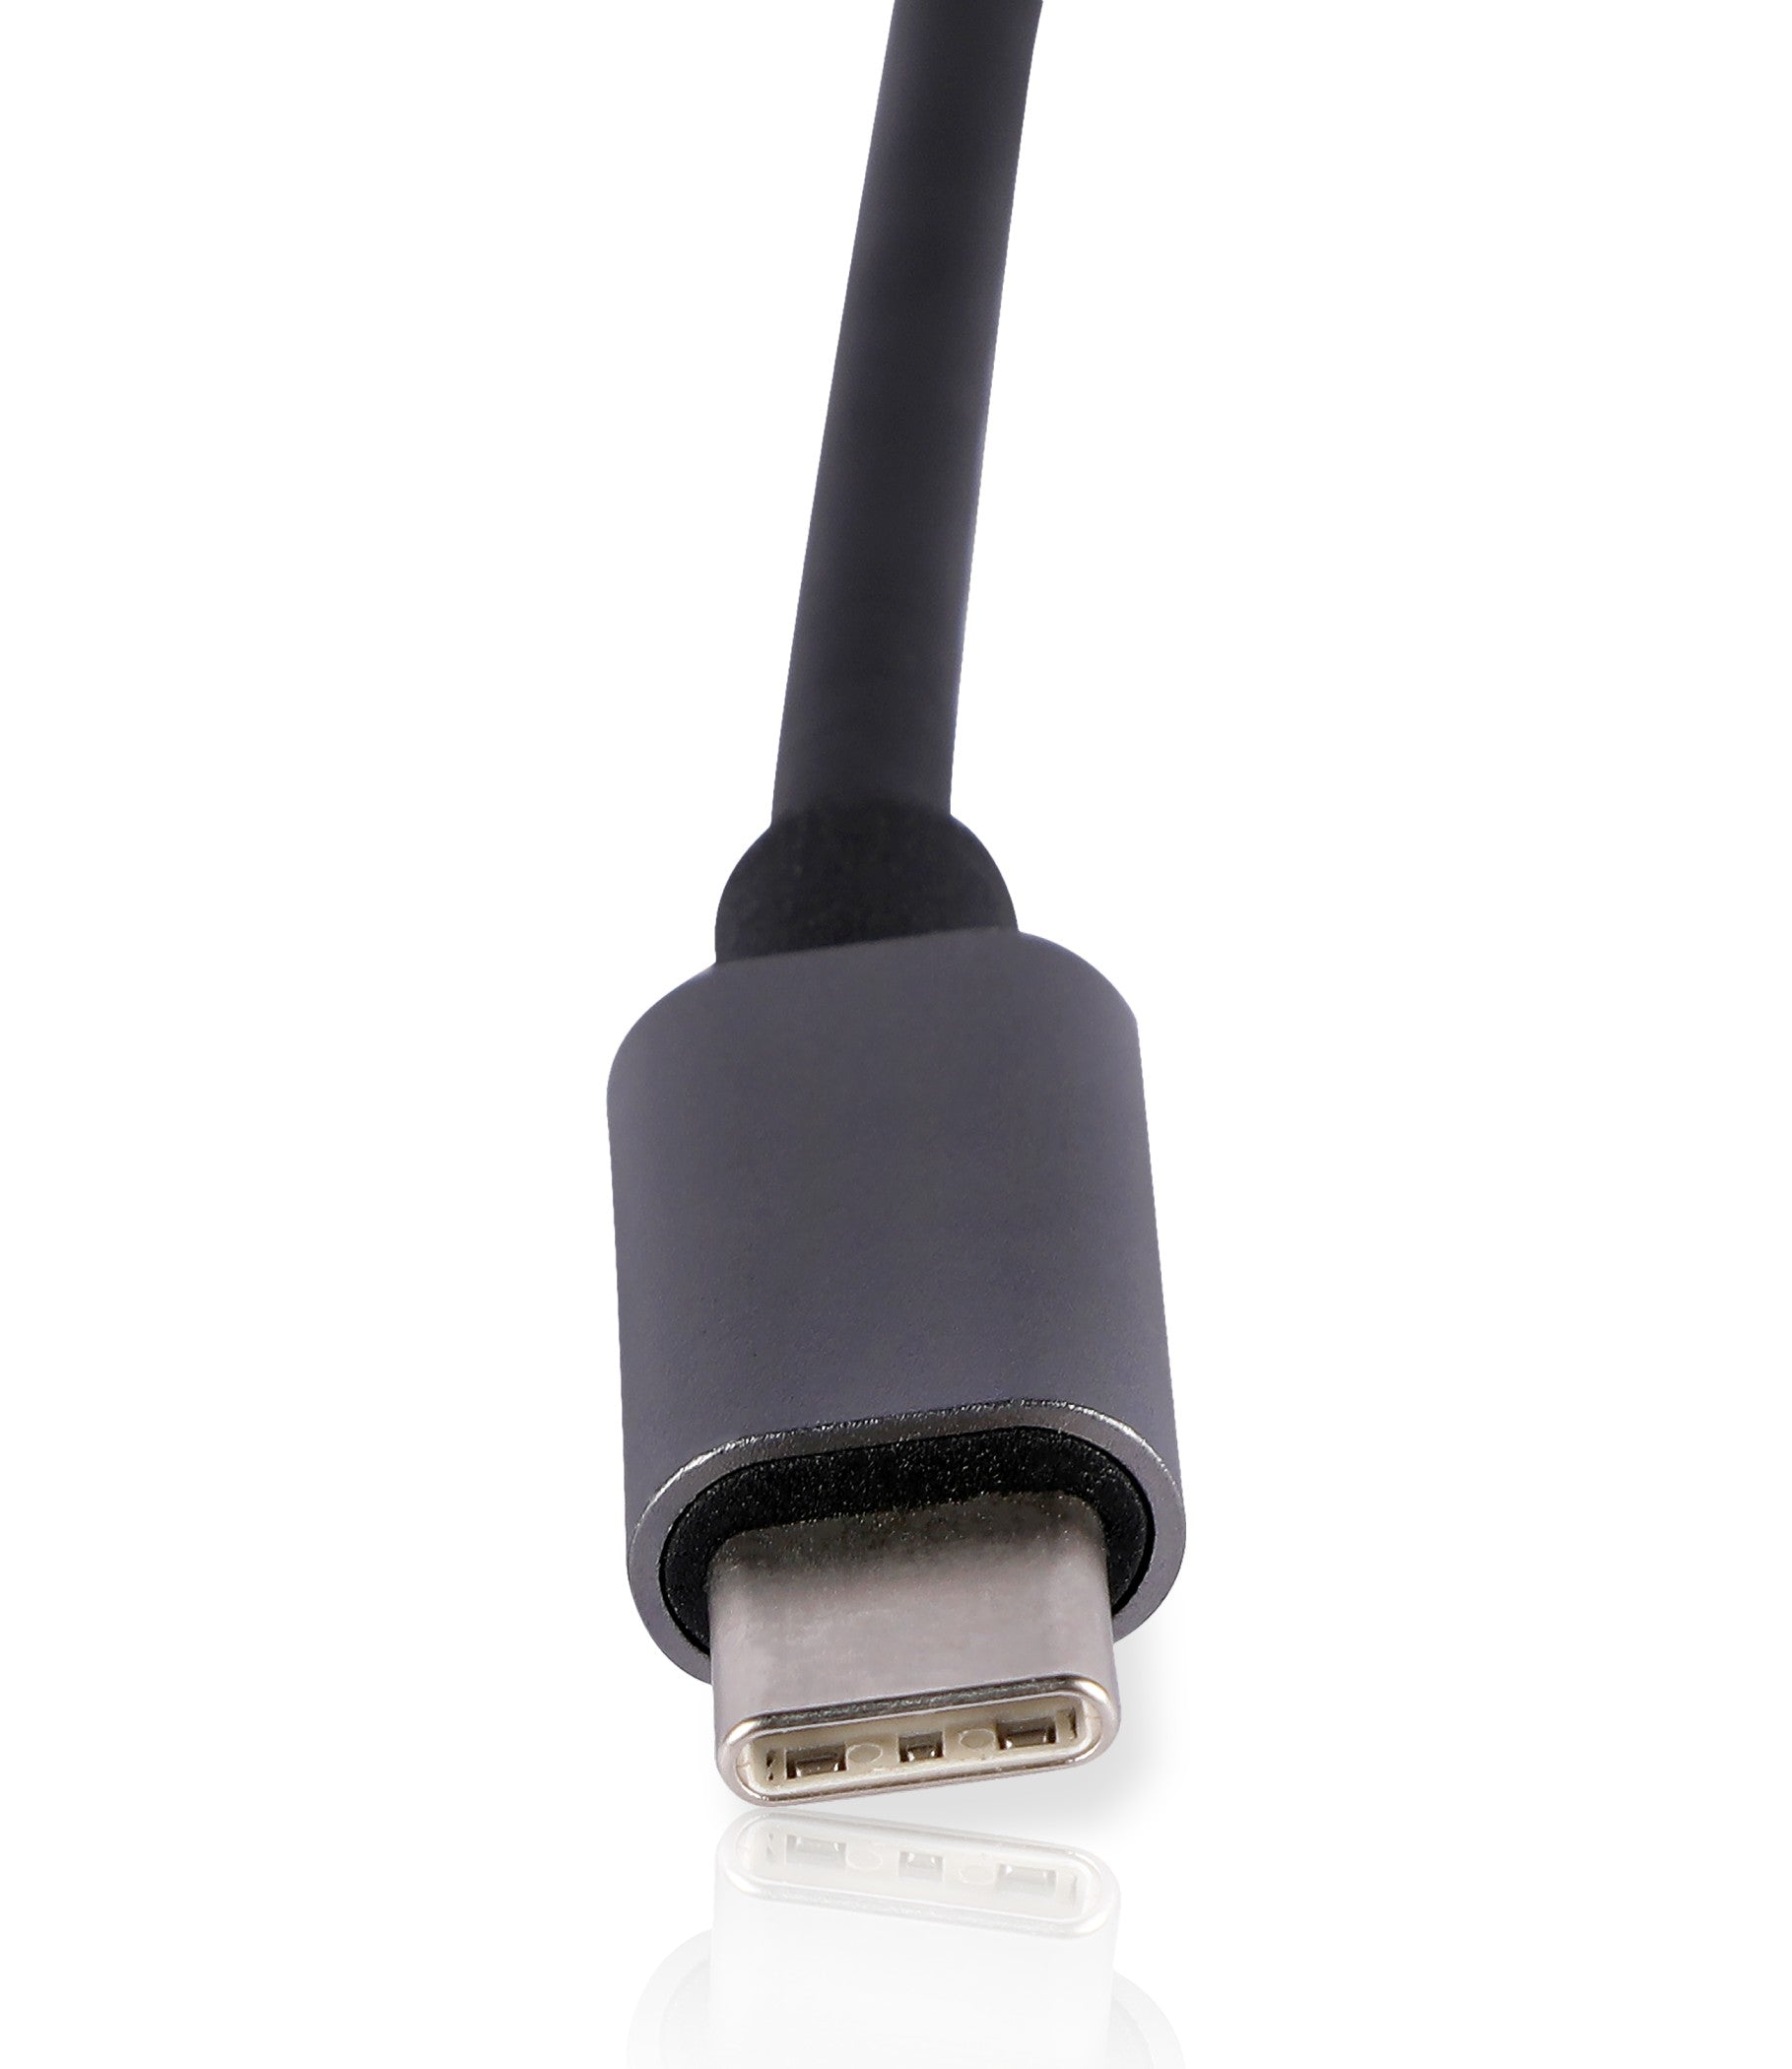 POWERX USB C TO LAN ADAPTER